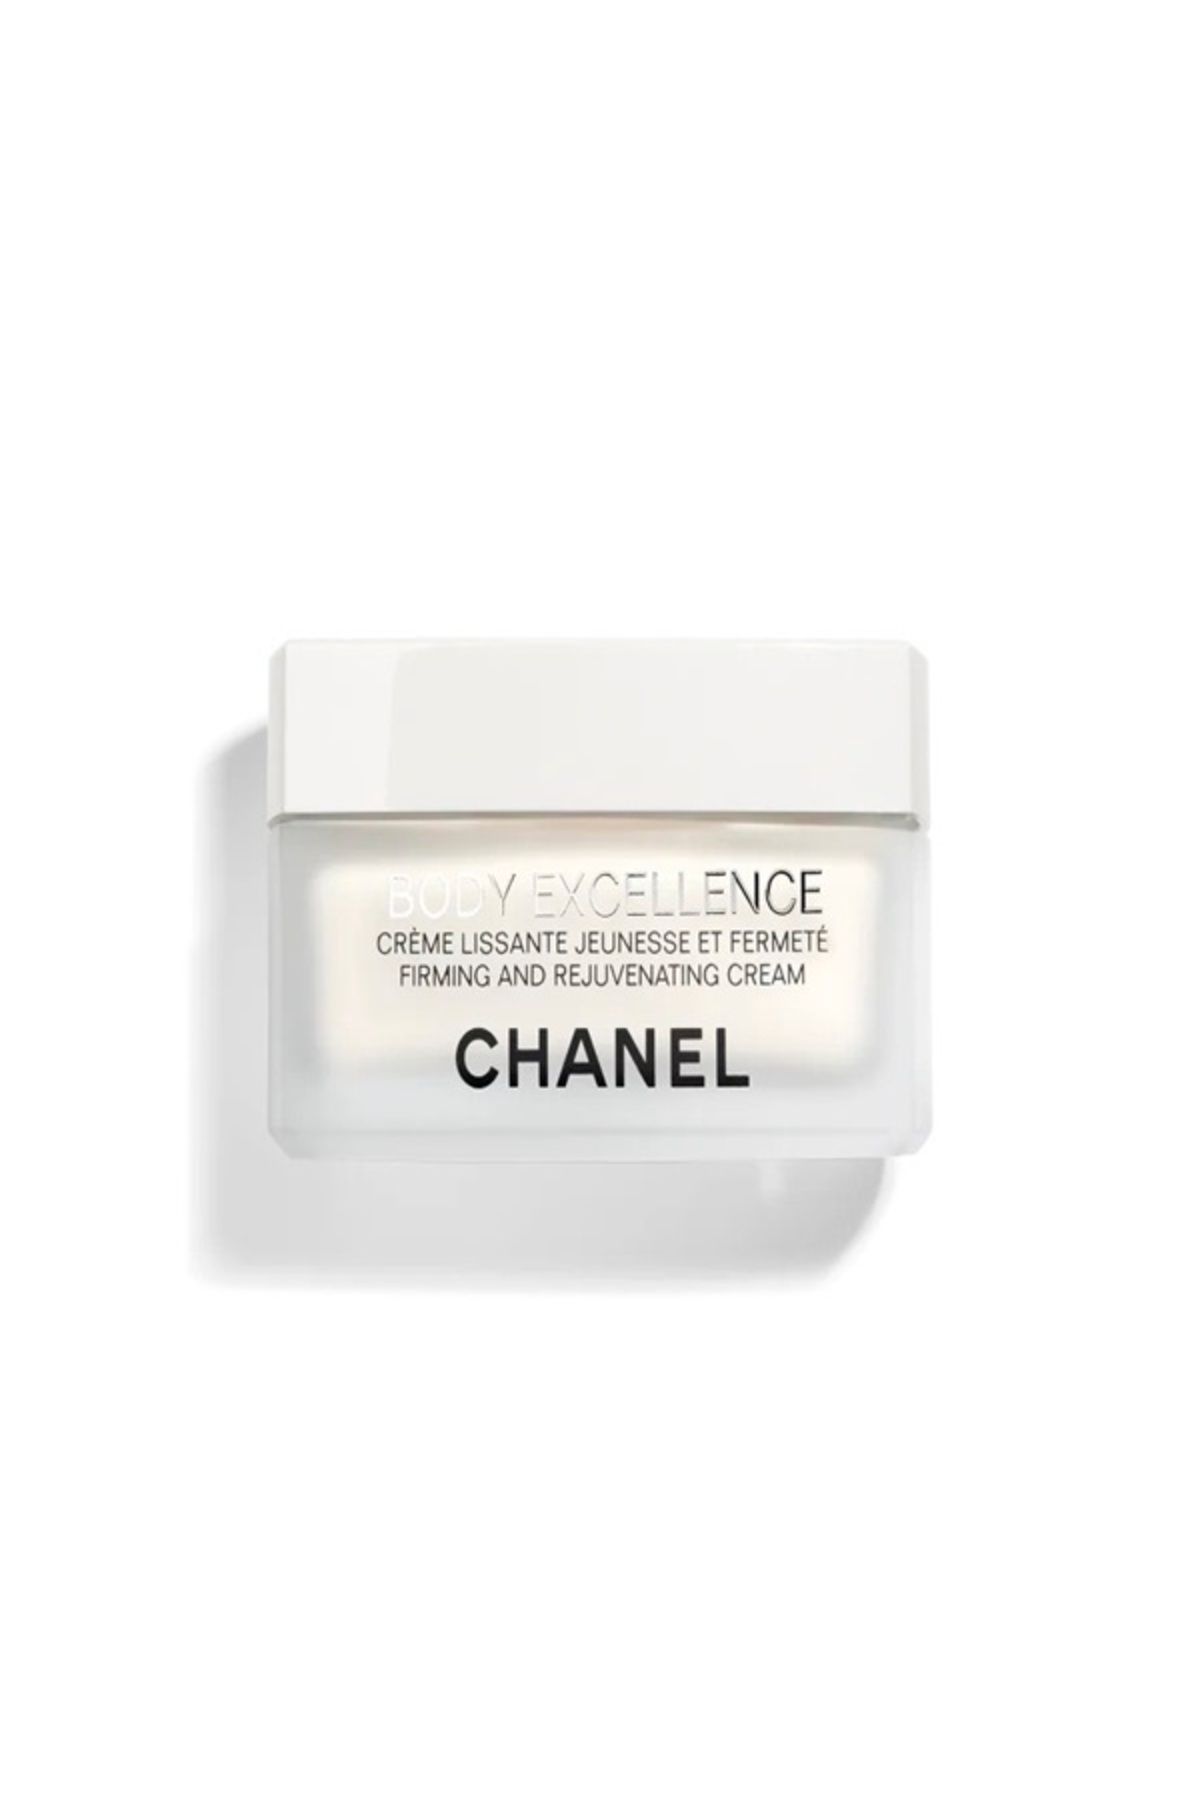 Chanel BODY EXCELLENCE CREAM SIKILAŞTIRICI VE YENİLEYİCİ KREM-150 g